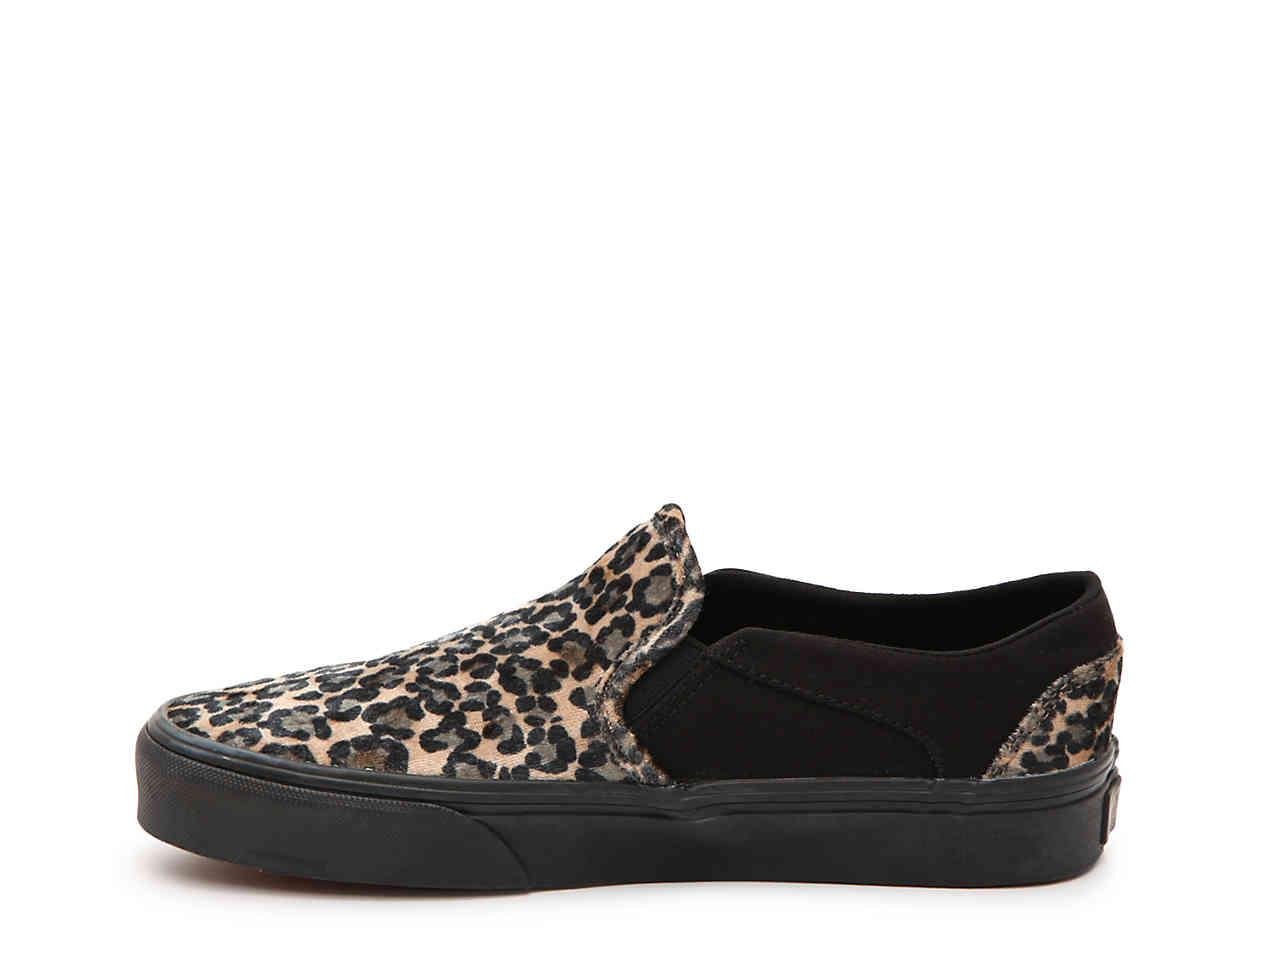 Vans Velvet Asher Slip-on Sneaker in Tan/Black Leopard Print - Lyst